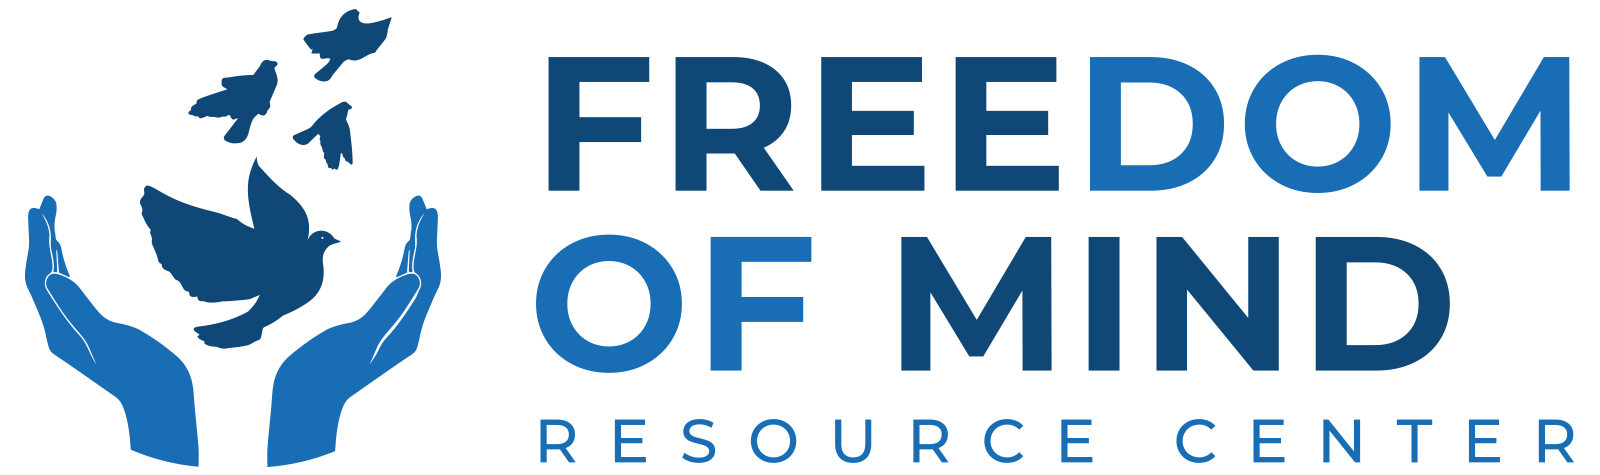 FreedomOfMind-logo-header